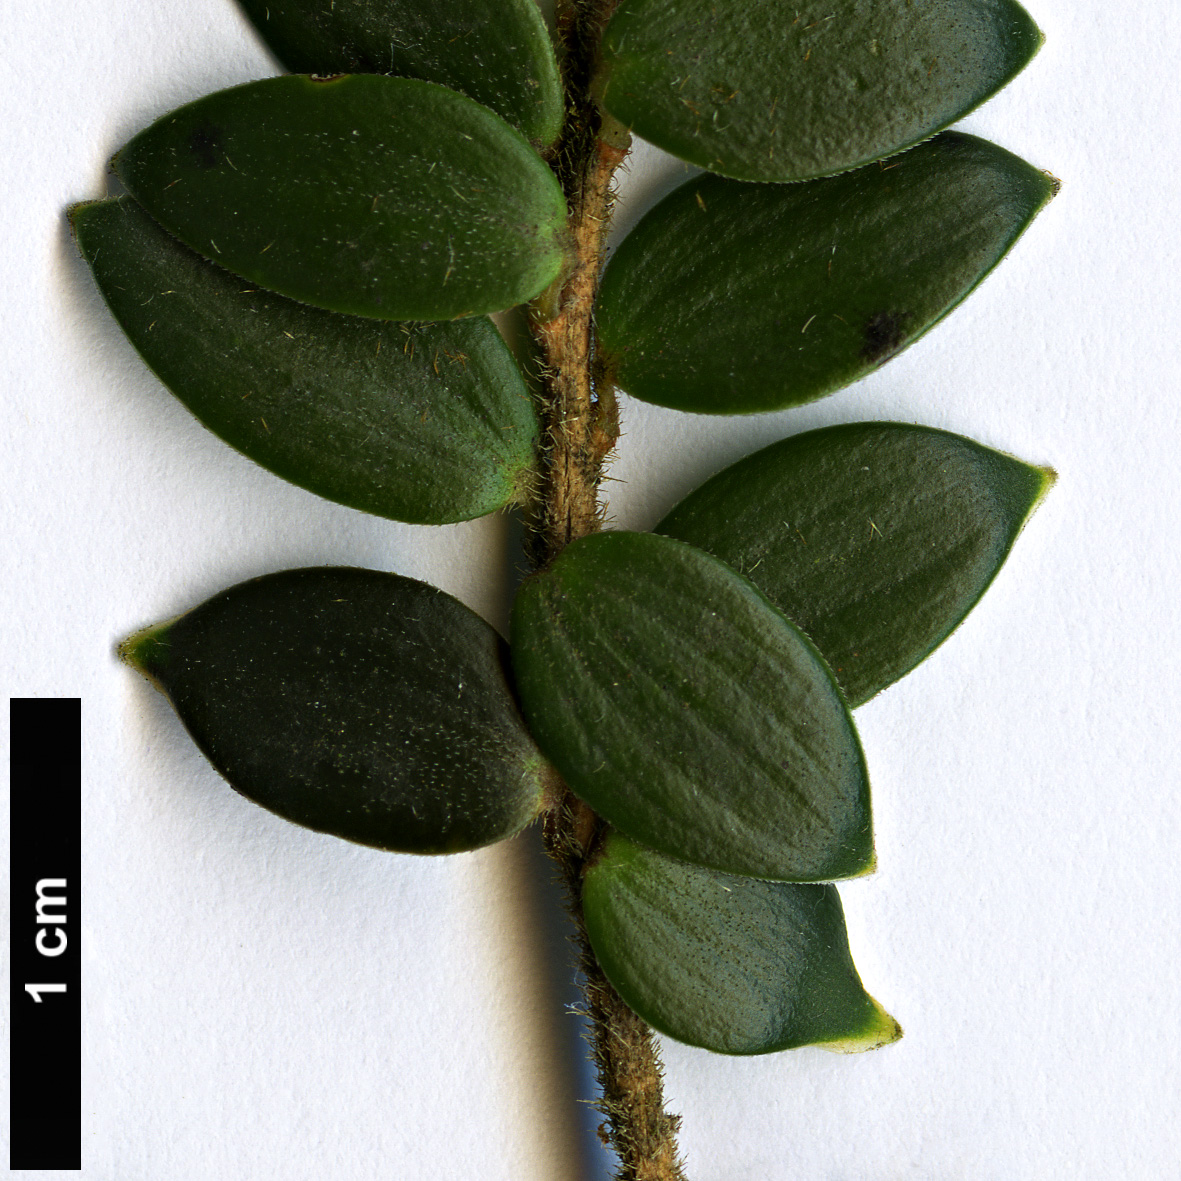 High resolution image: Family: Ericaceae - Genus: Trochocarpa - Taxon: gunnii